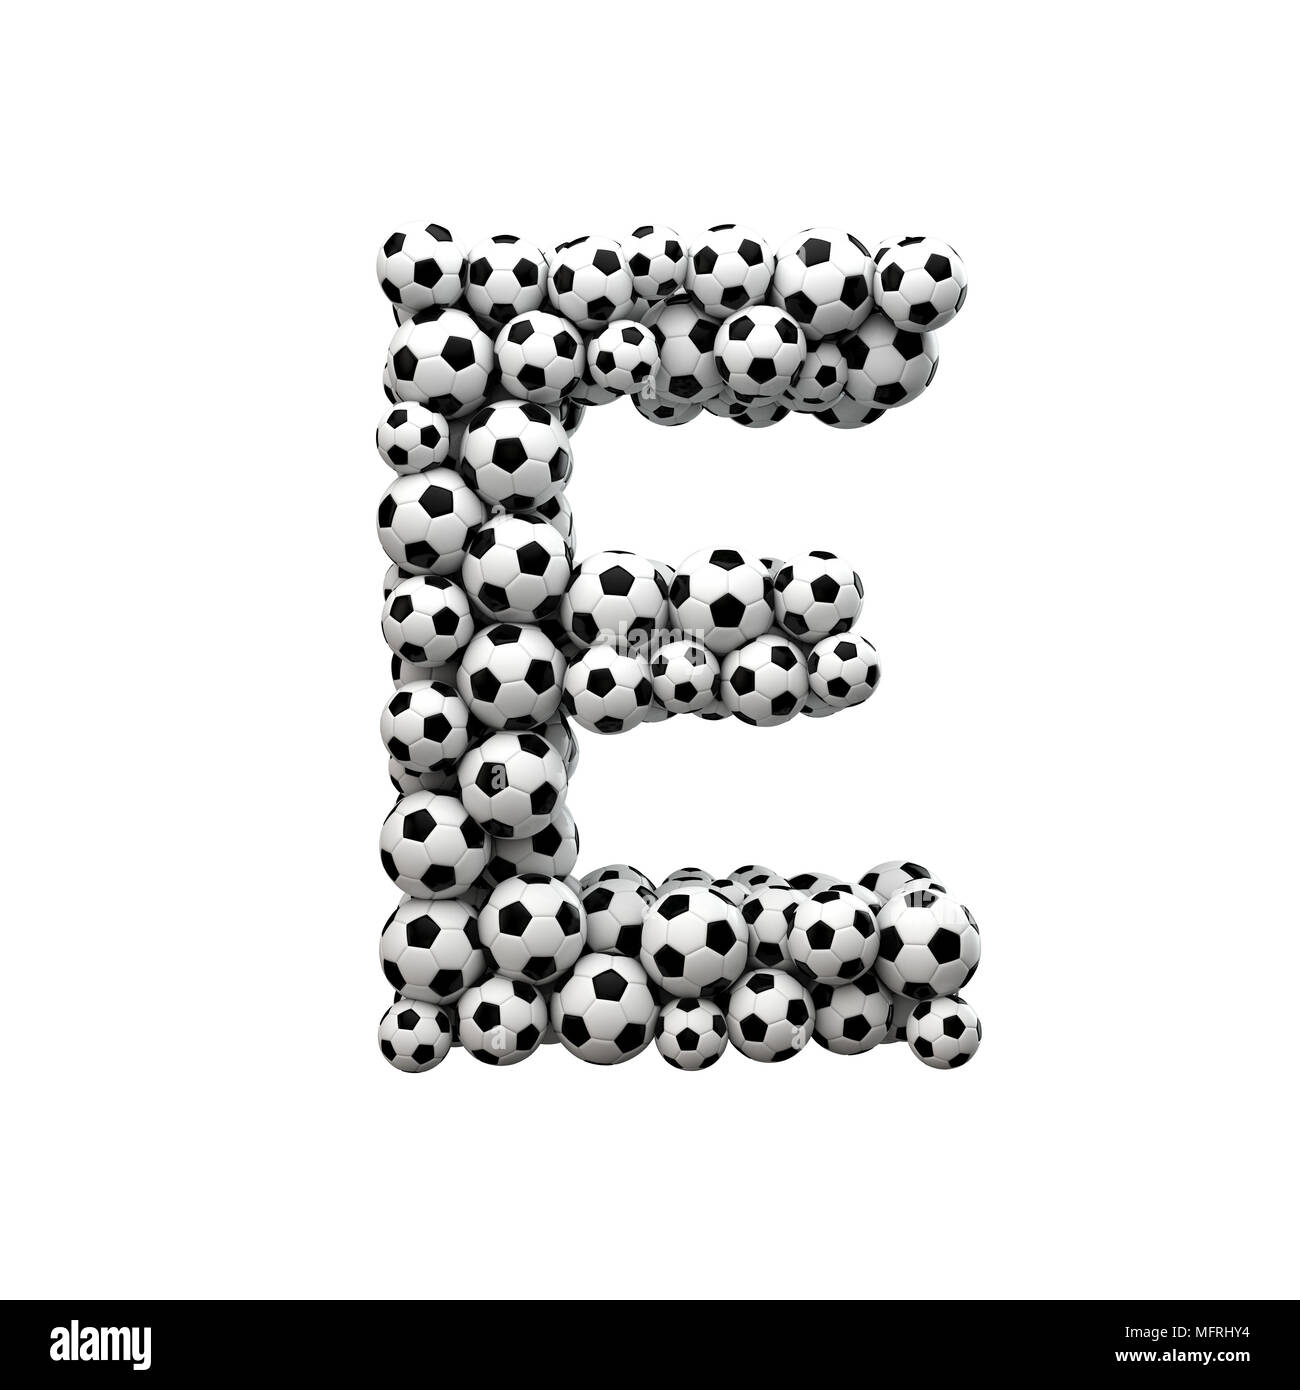 Letra mayúscula E font hechas a partir de una colección de balones de fútbol. 3D Rendering Foto de stock